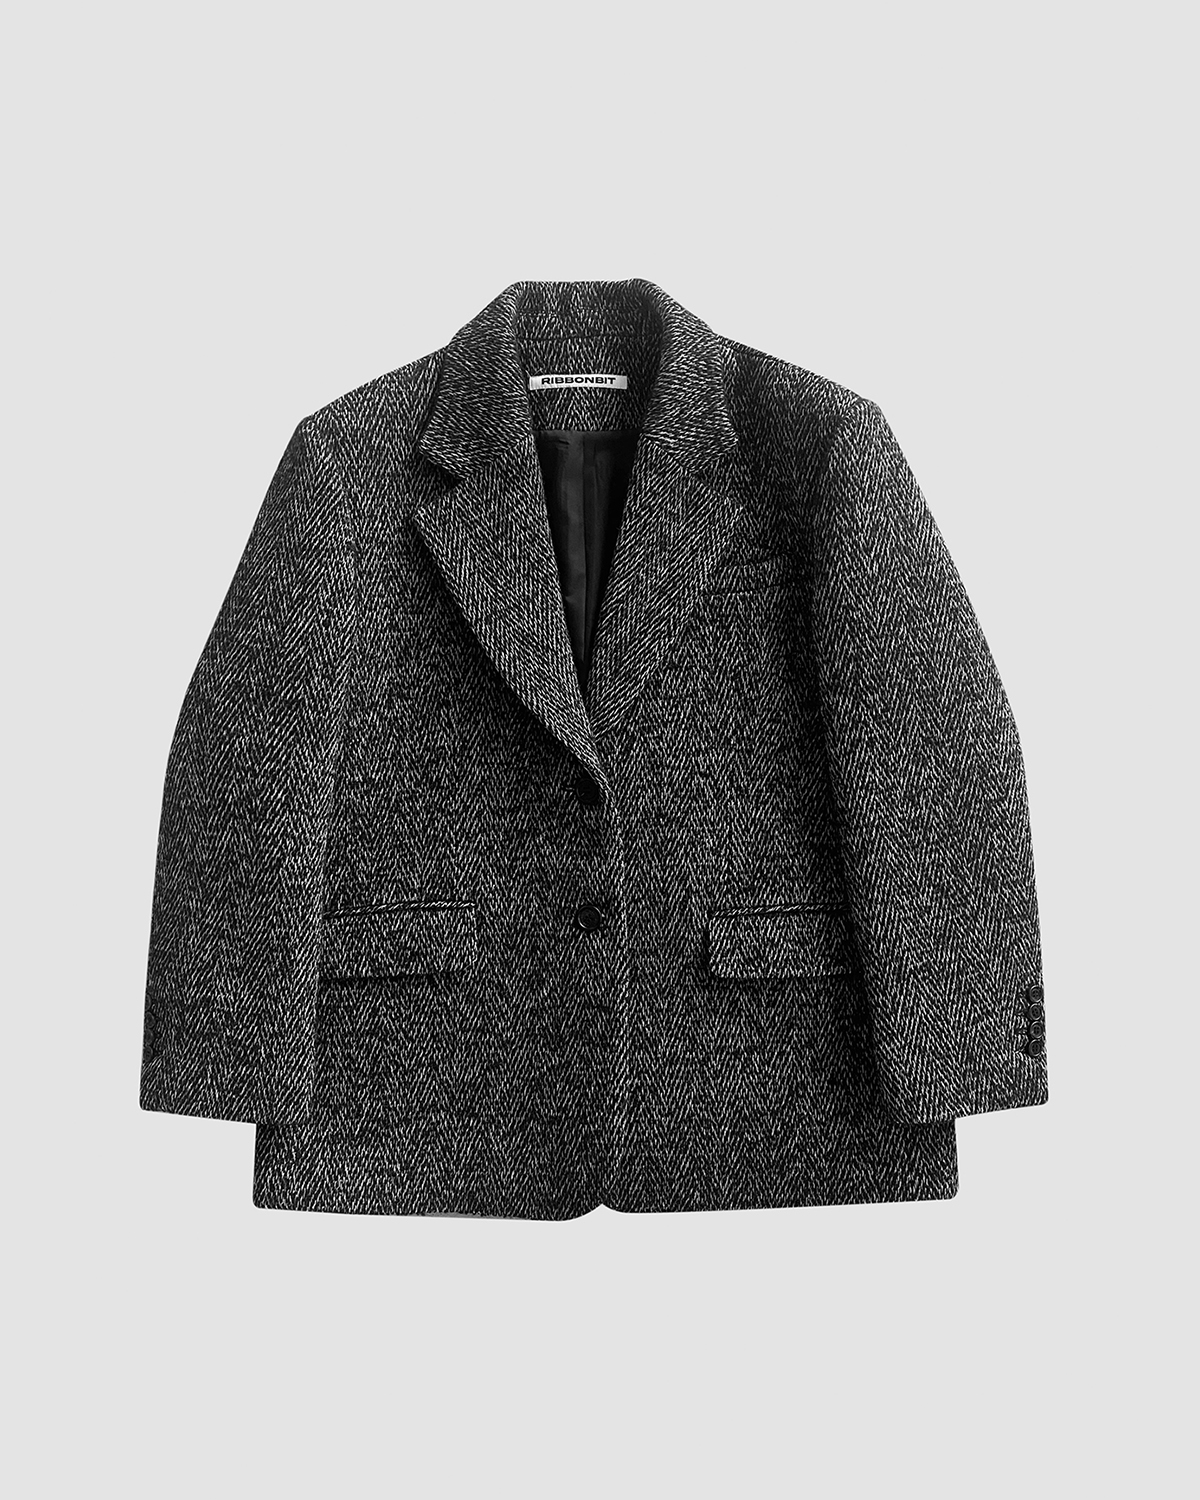 Calma Herringbone Wool Jacket